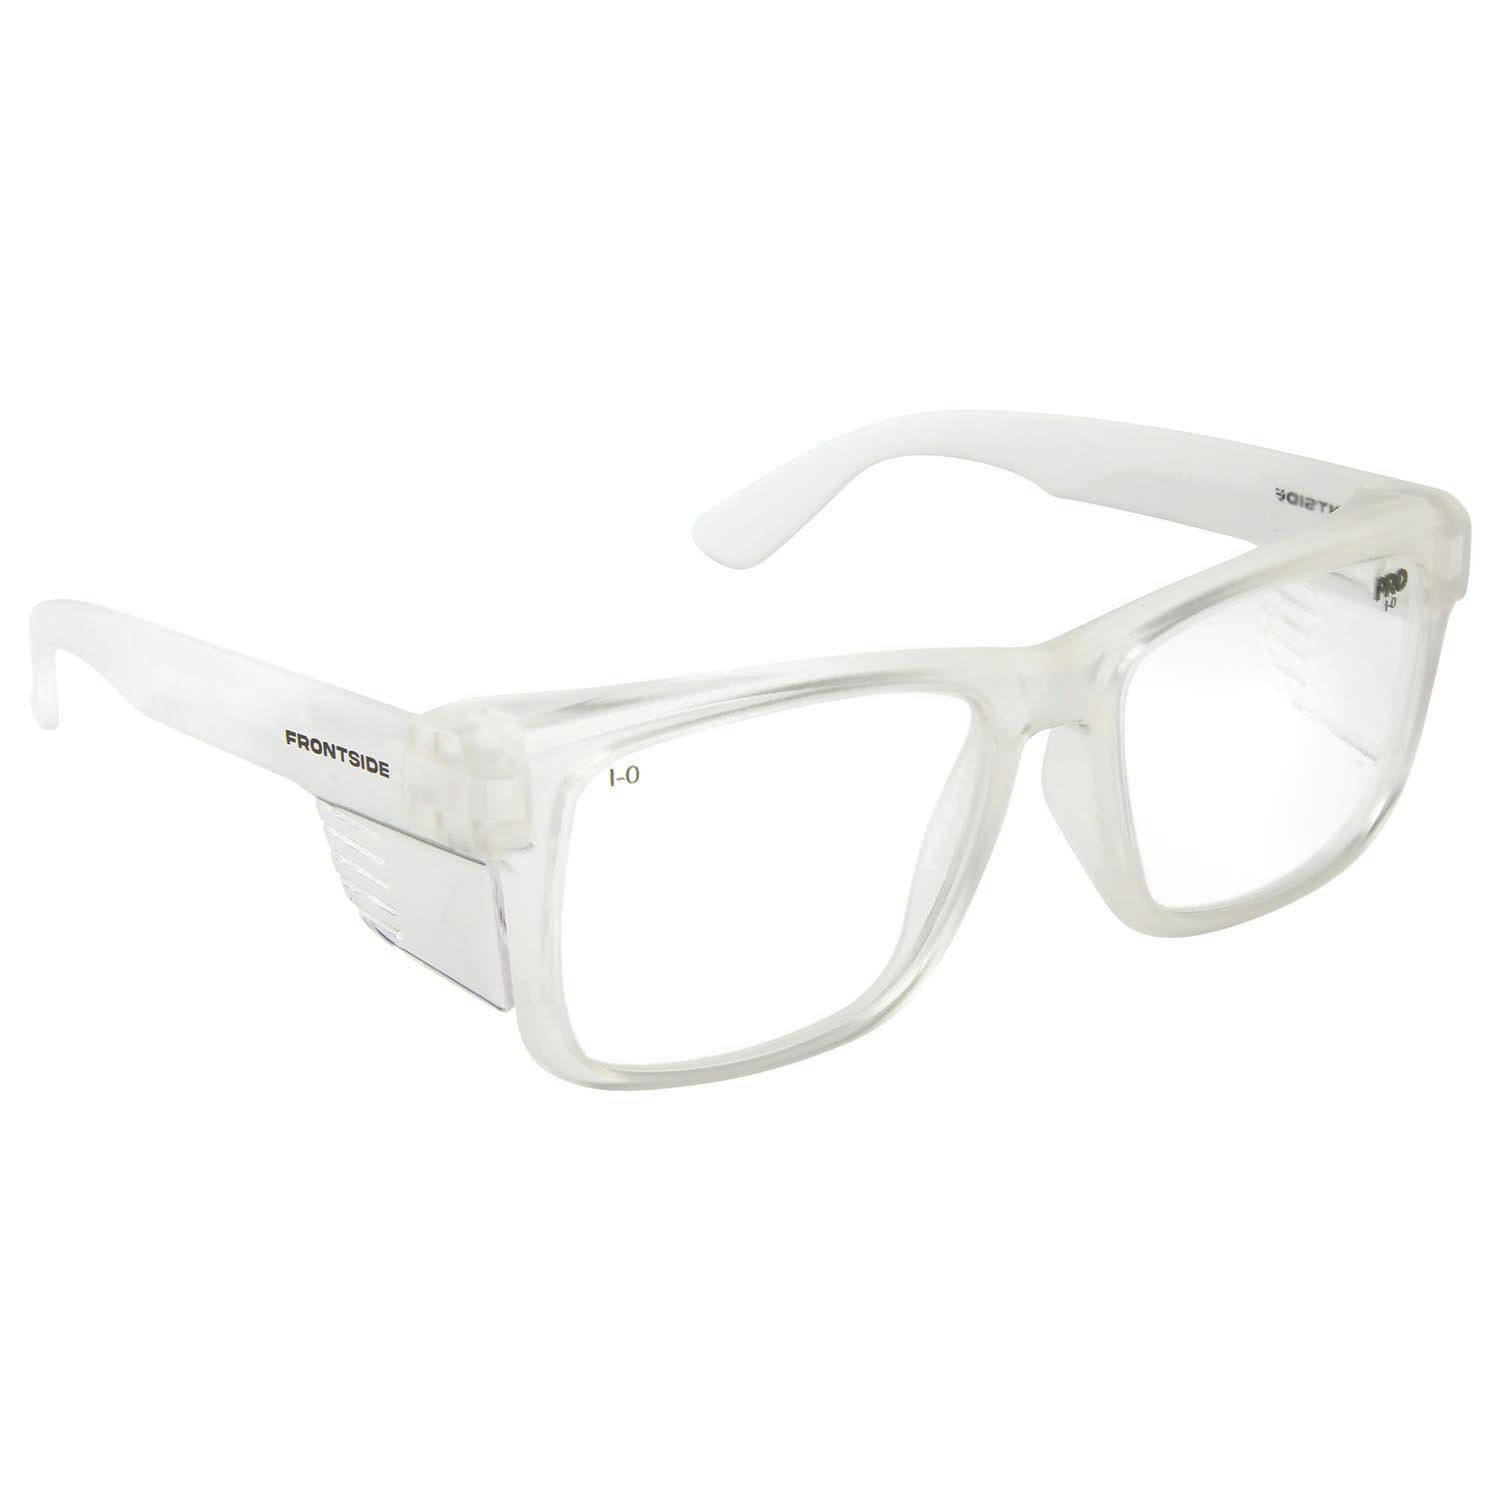 Frontside Safety Glasses